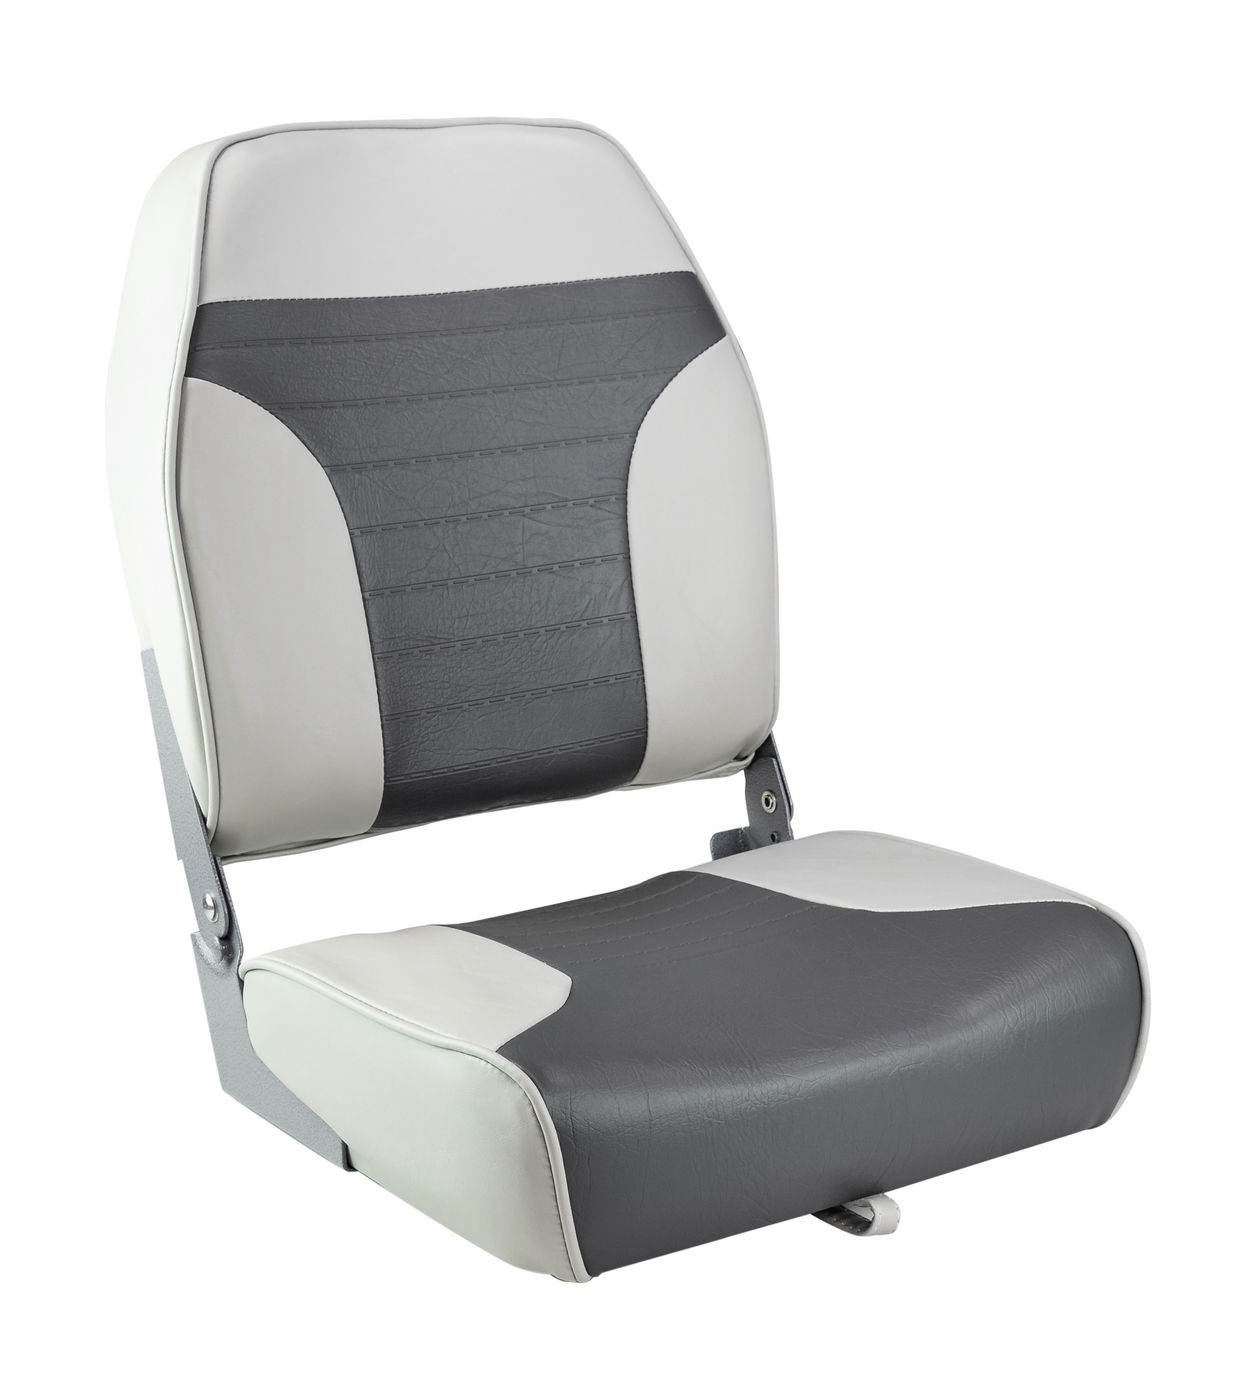 Кресло складное мягкое ECONOMY с высокой спинкой, цвет серый/темно-серый Springfield 1040663